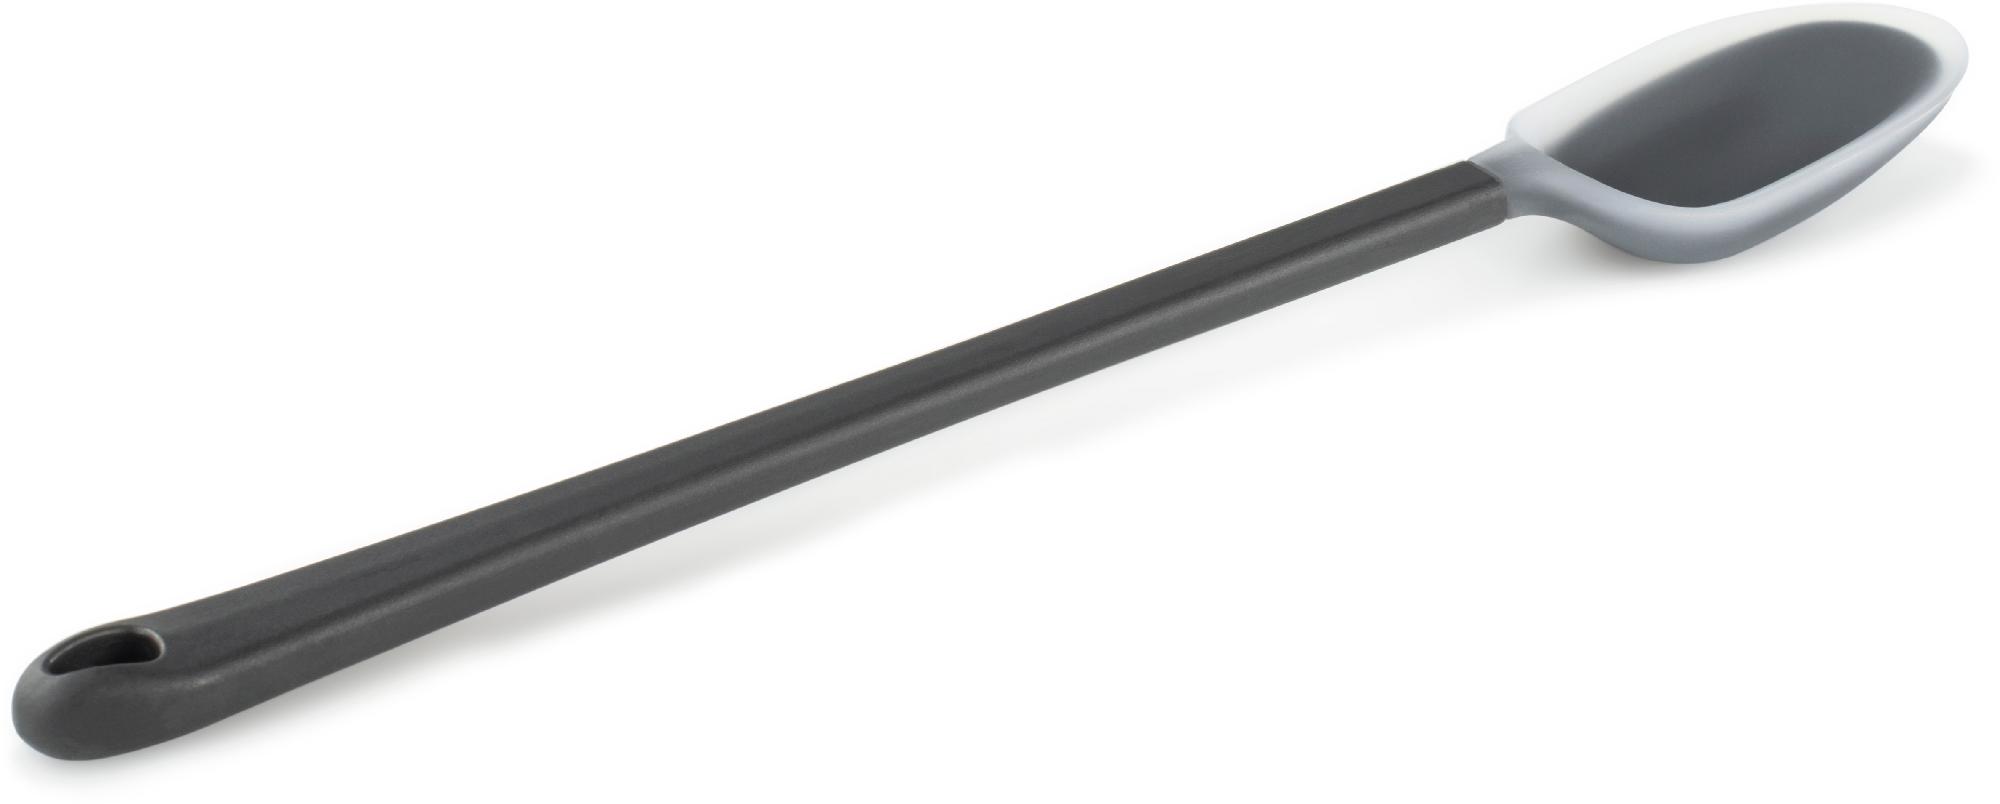 дуршлаги для сковородок ложка с длинной ручкой антипригарный большой дуршлаг высокотемпературная бытовая ложка для пельменей ложка с фи Эссенциальная ложка - длинная GSI Outdoors, серый